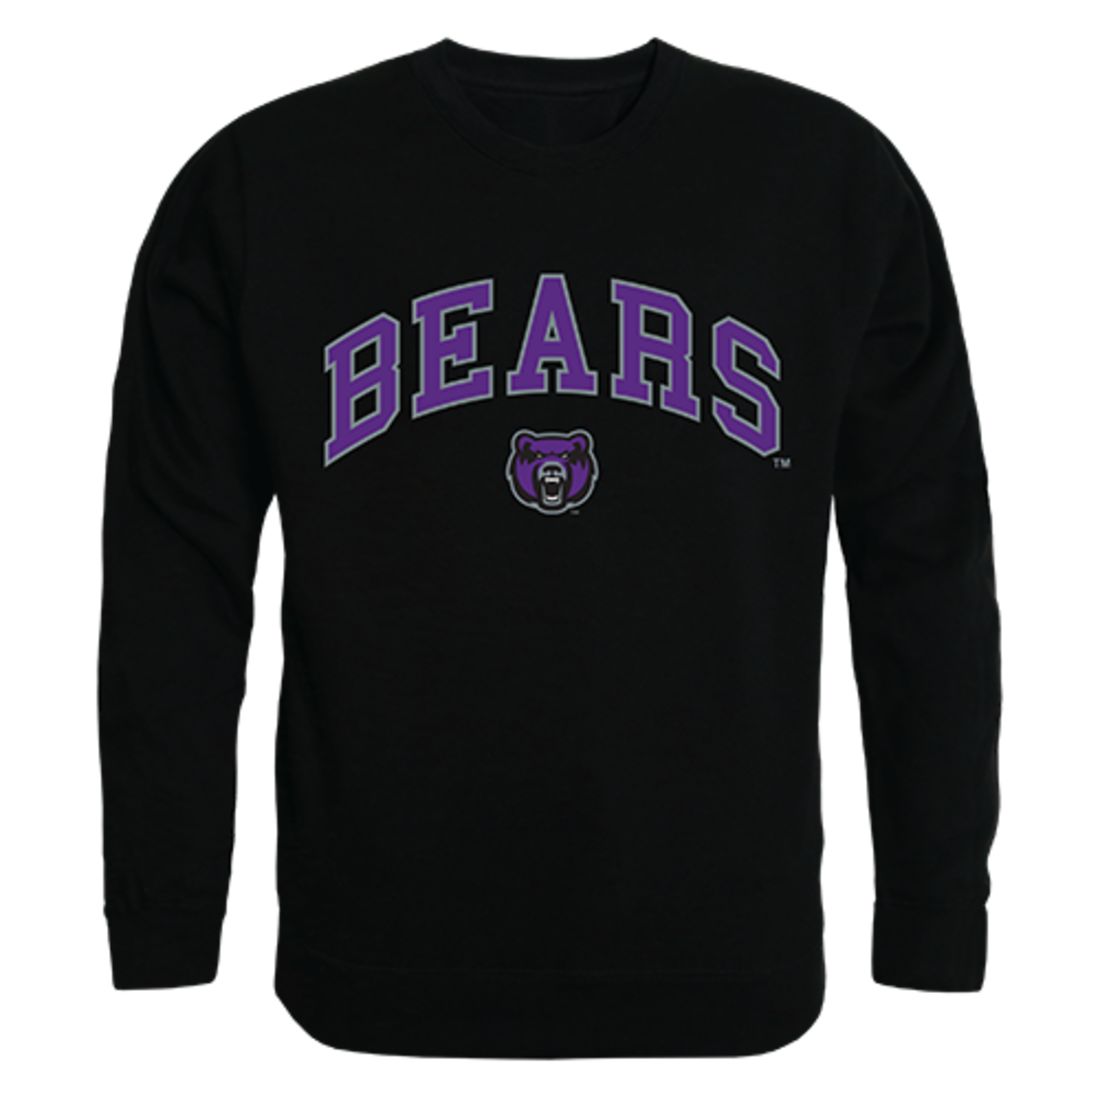 UCA University of Central Arkansas Campus Crewneck Pullover Sweatshirt Sweater Black-Campus-Wardrobe